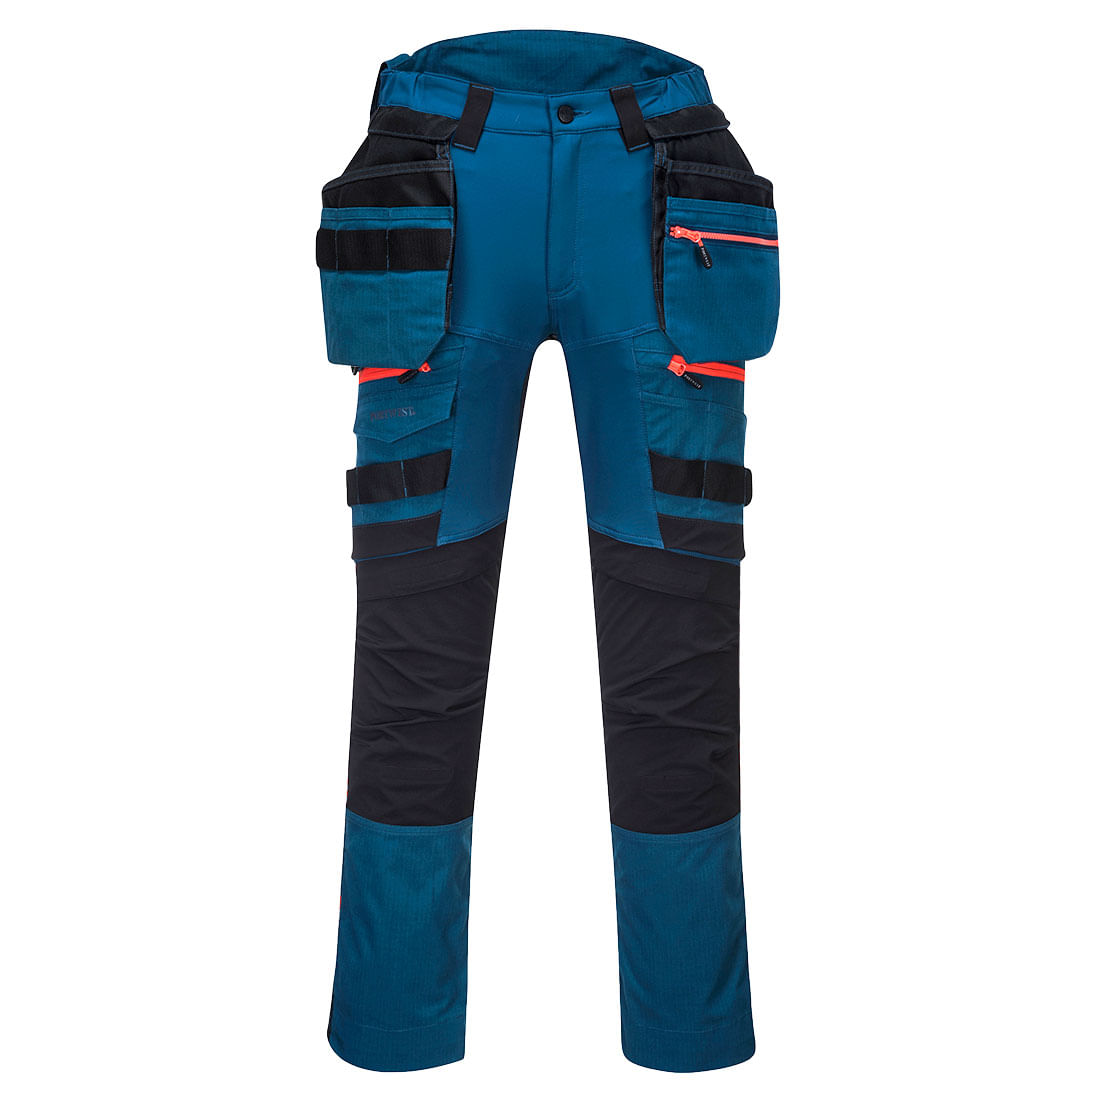 Pantaloni de protectie negru/albastru Portwest DX3 Marime 34 dacris.net imagine 2022 depozituldepapetarie.ro